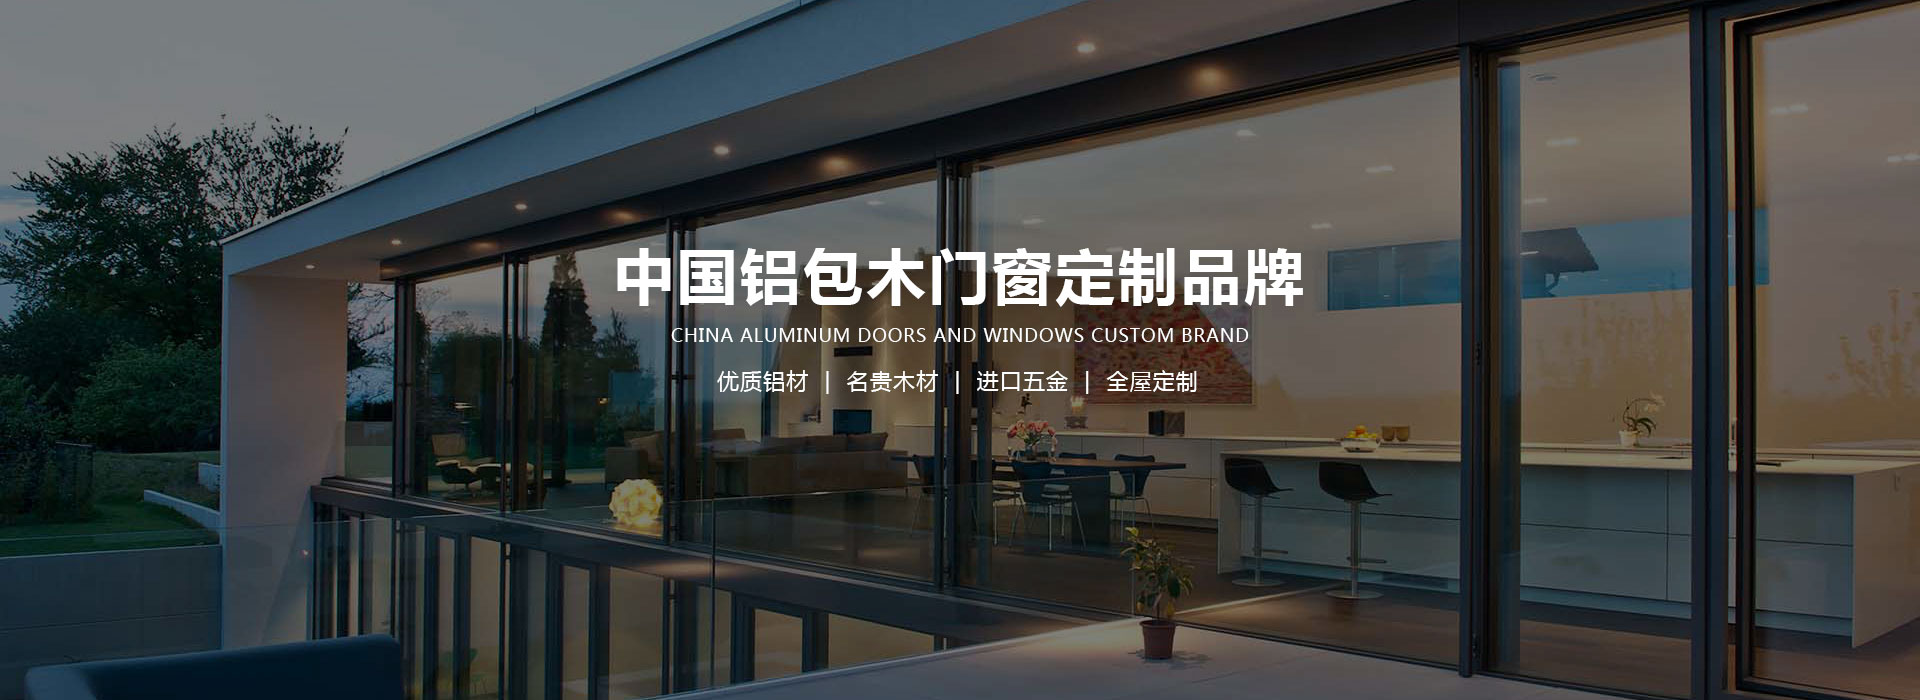 中国铝包木门窗定制品牌